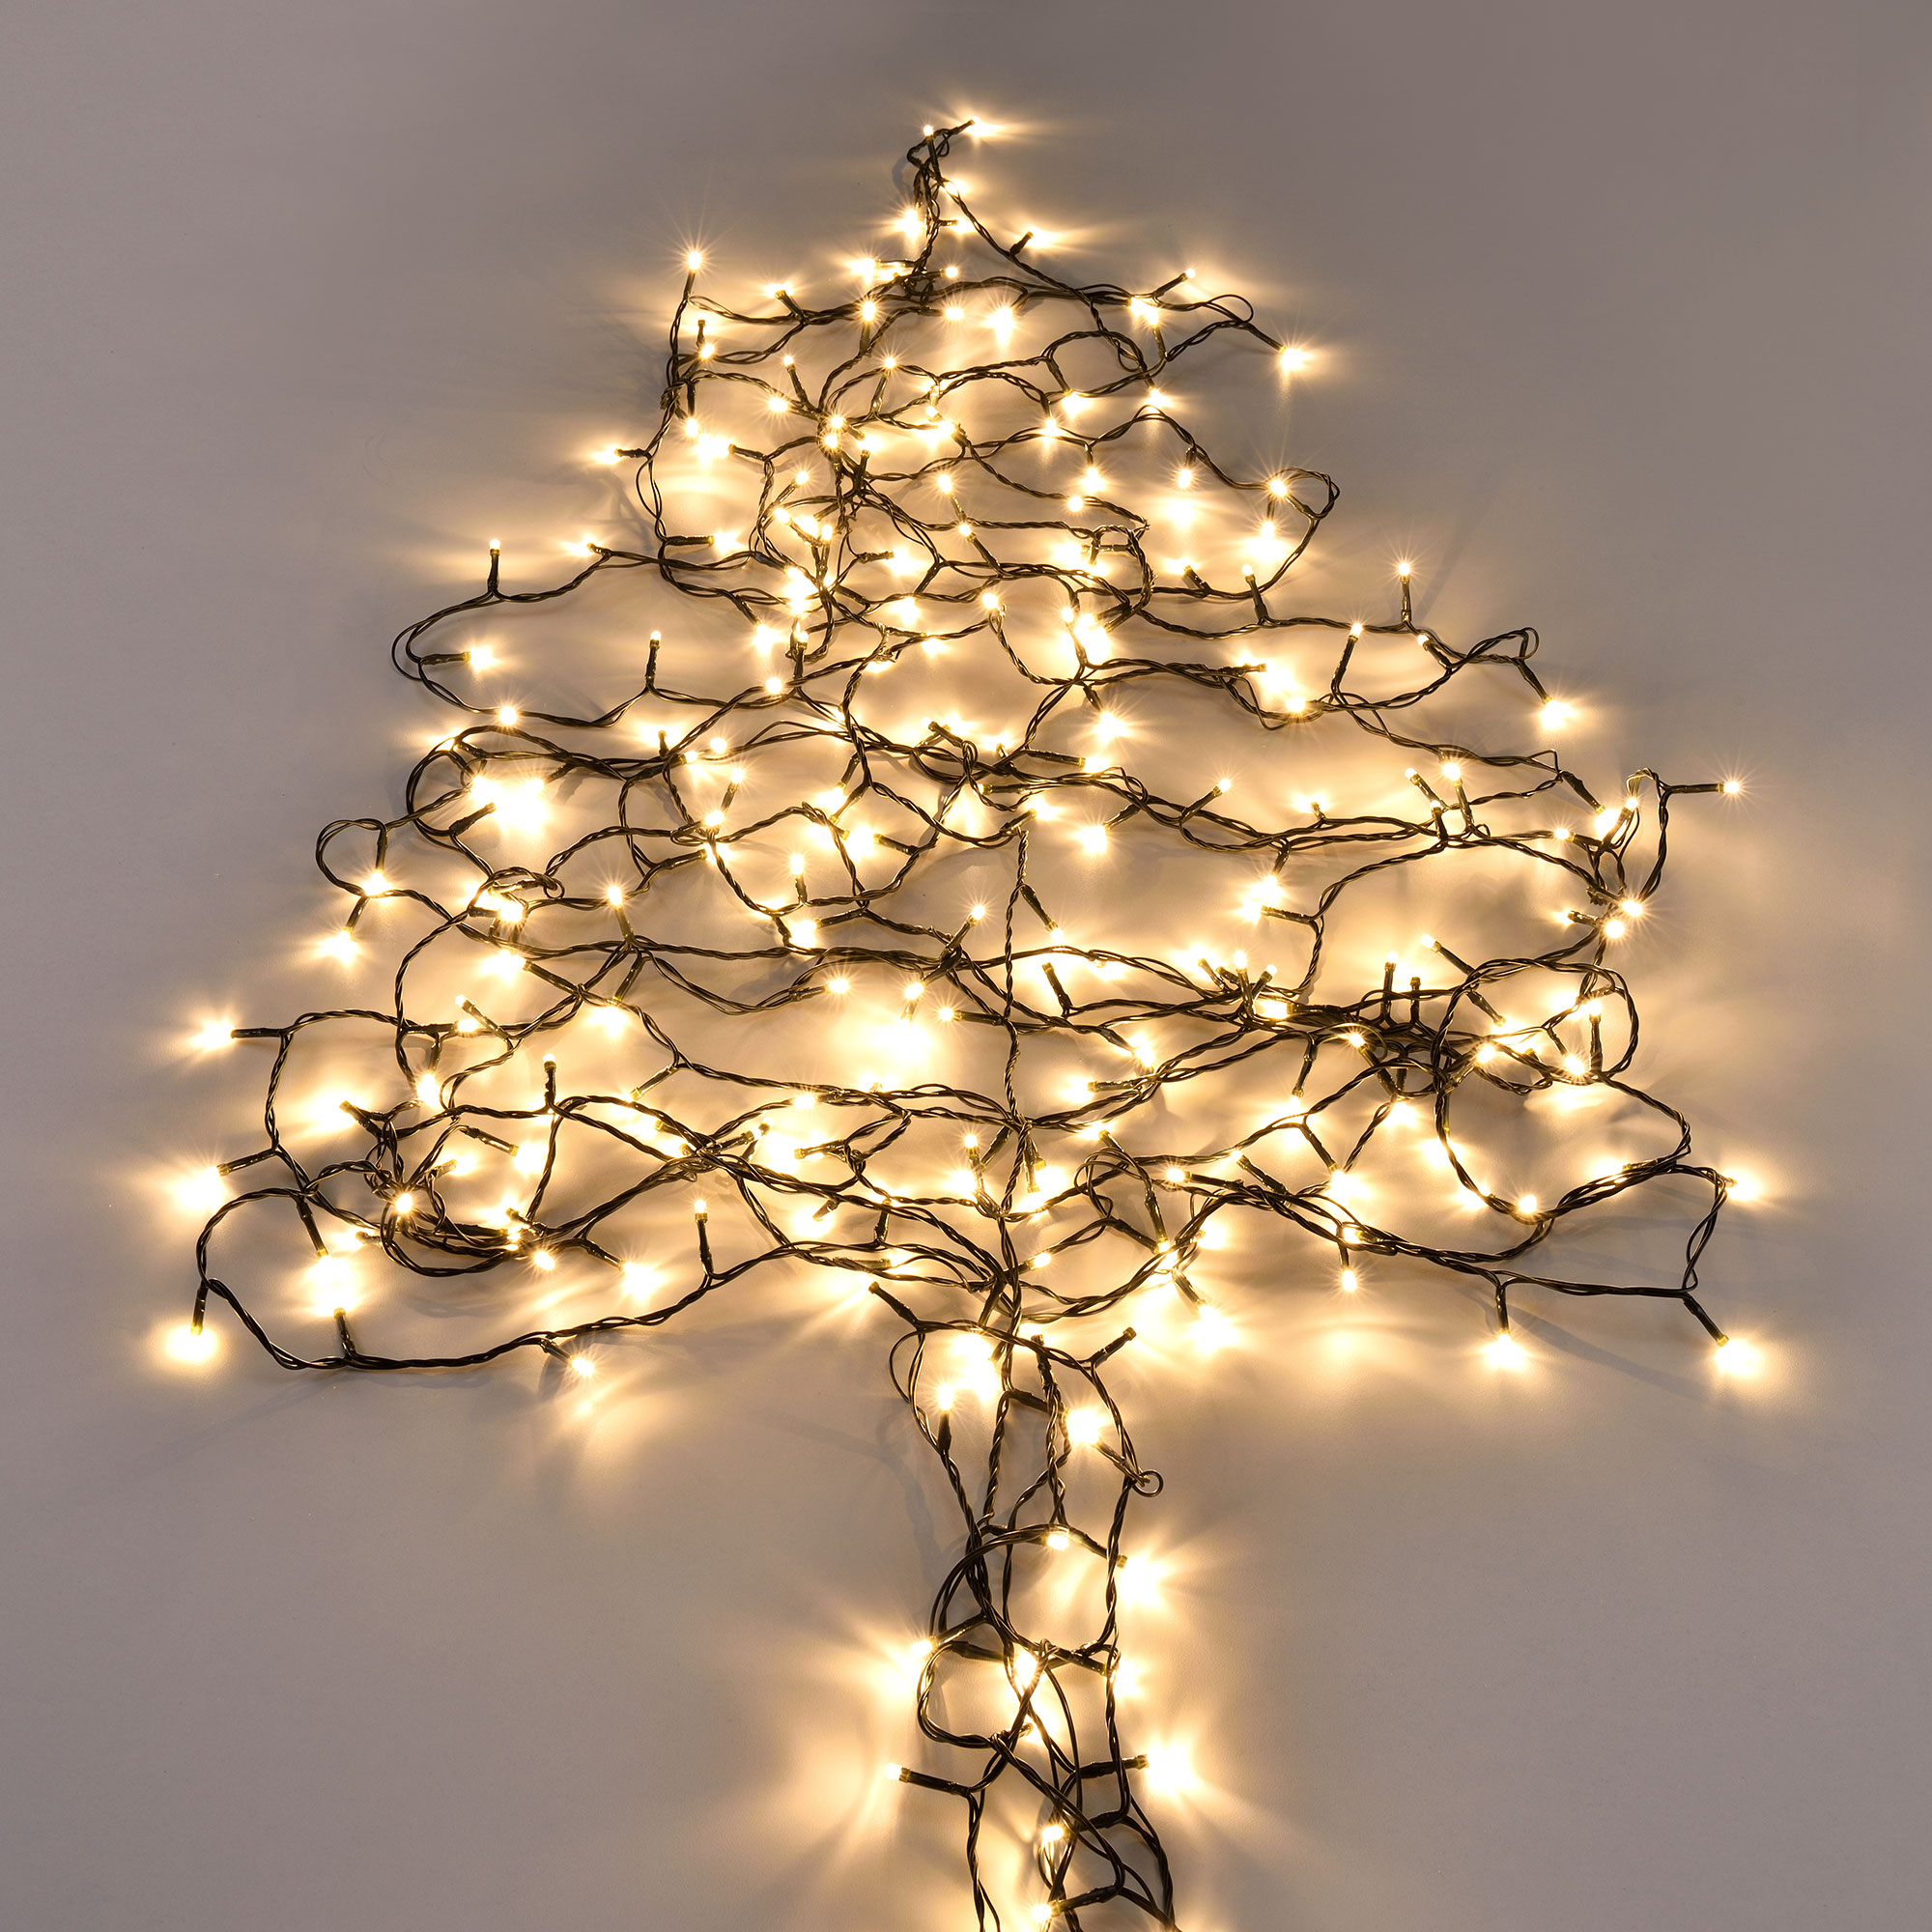 in.tec ® 120 LED 14m Lichterkette Netzteil Innen/Außen Weihnachten Warmweiß